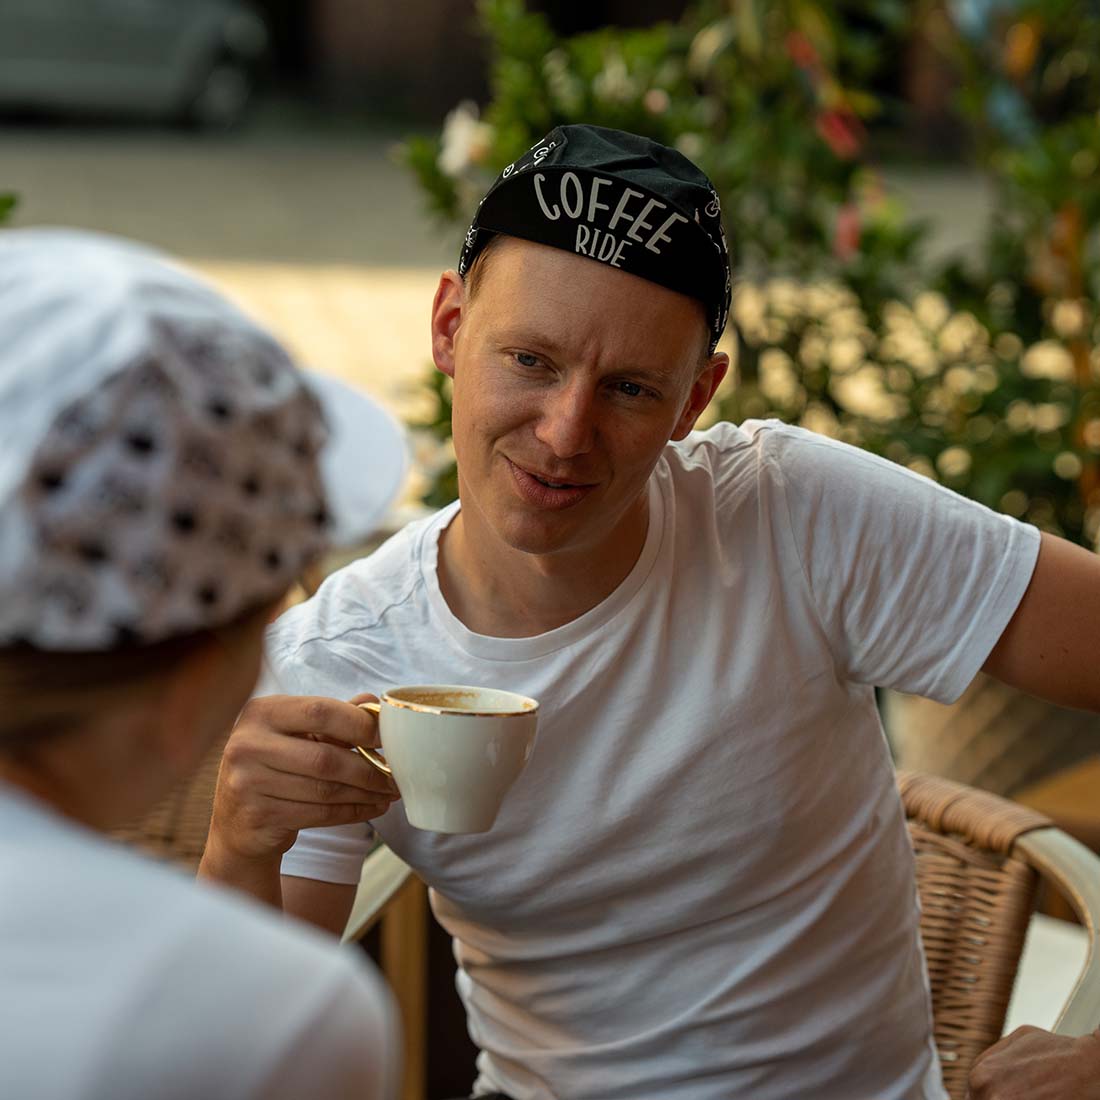 mężczyzna siedzi przy stoliku pijąc kawę i nosi czapeczkę z napisem &#039;coffee ride&#039;